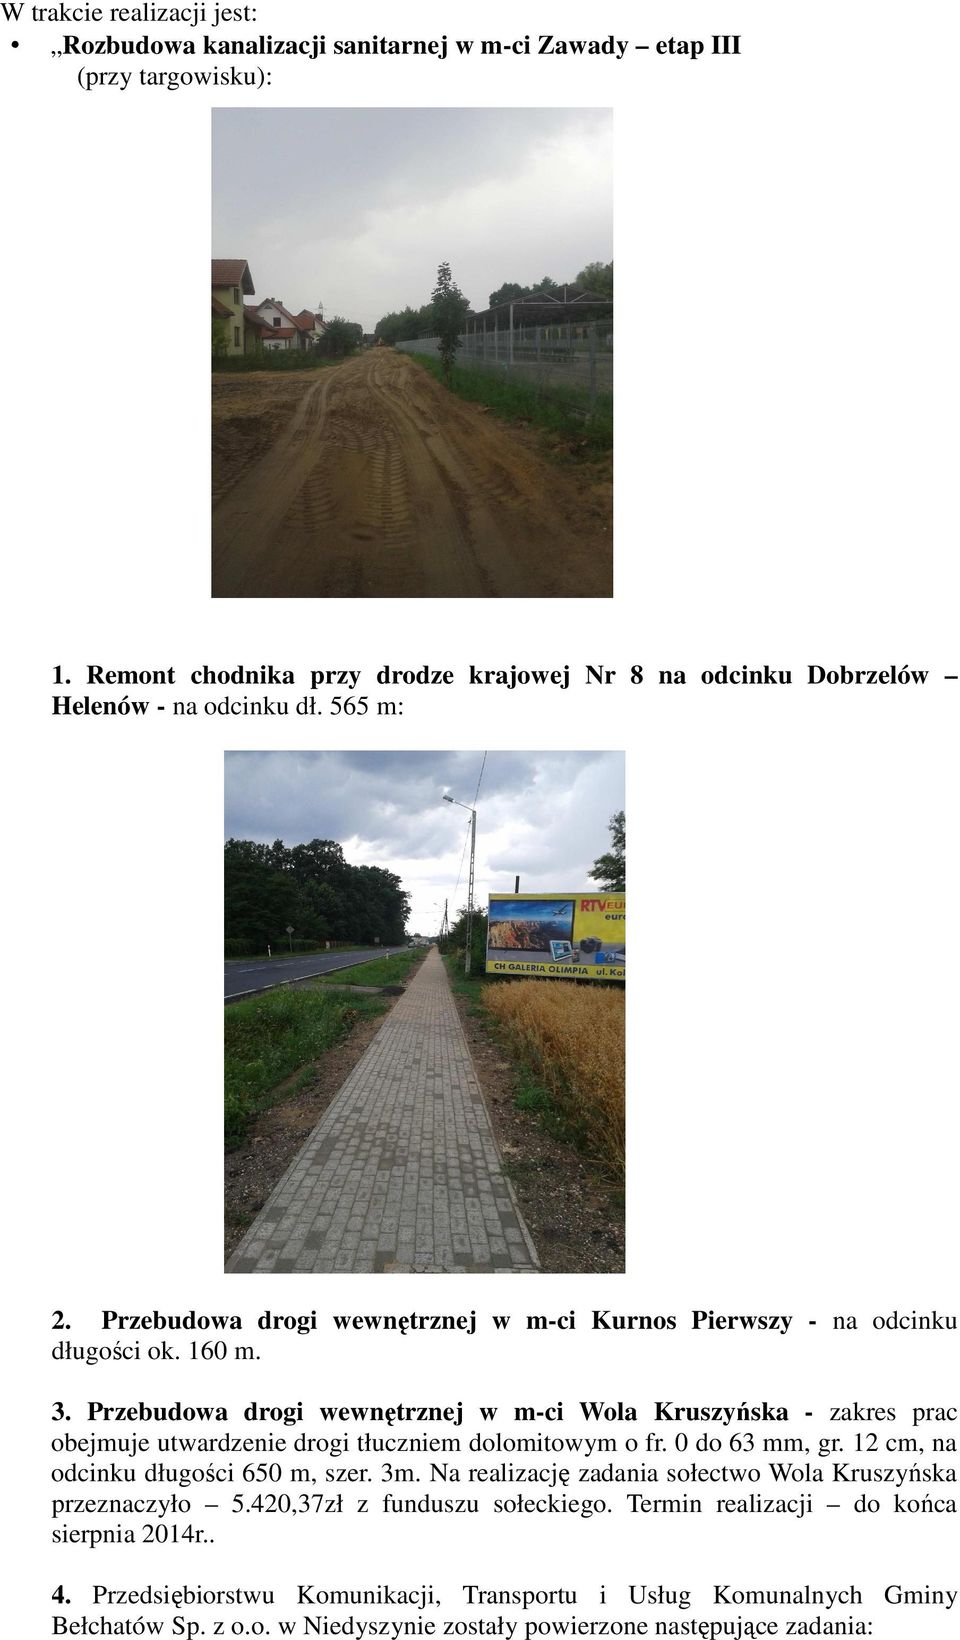 Przebudowa drogi wewnętrznej w m-ci Wola Kruszyńska - zakres prac obejmuje utwardzenie drogi tłuczniem dolomitowym o fr. 0 do 63 mm, gr. 12 cm, na odcinku długości 650 m, szer. 3m.